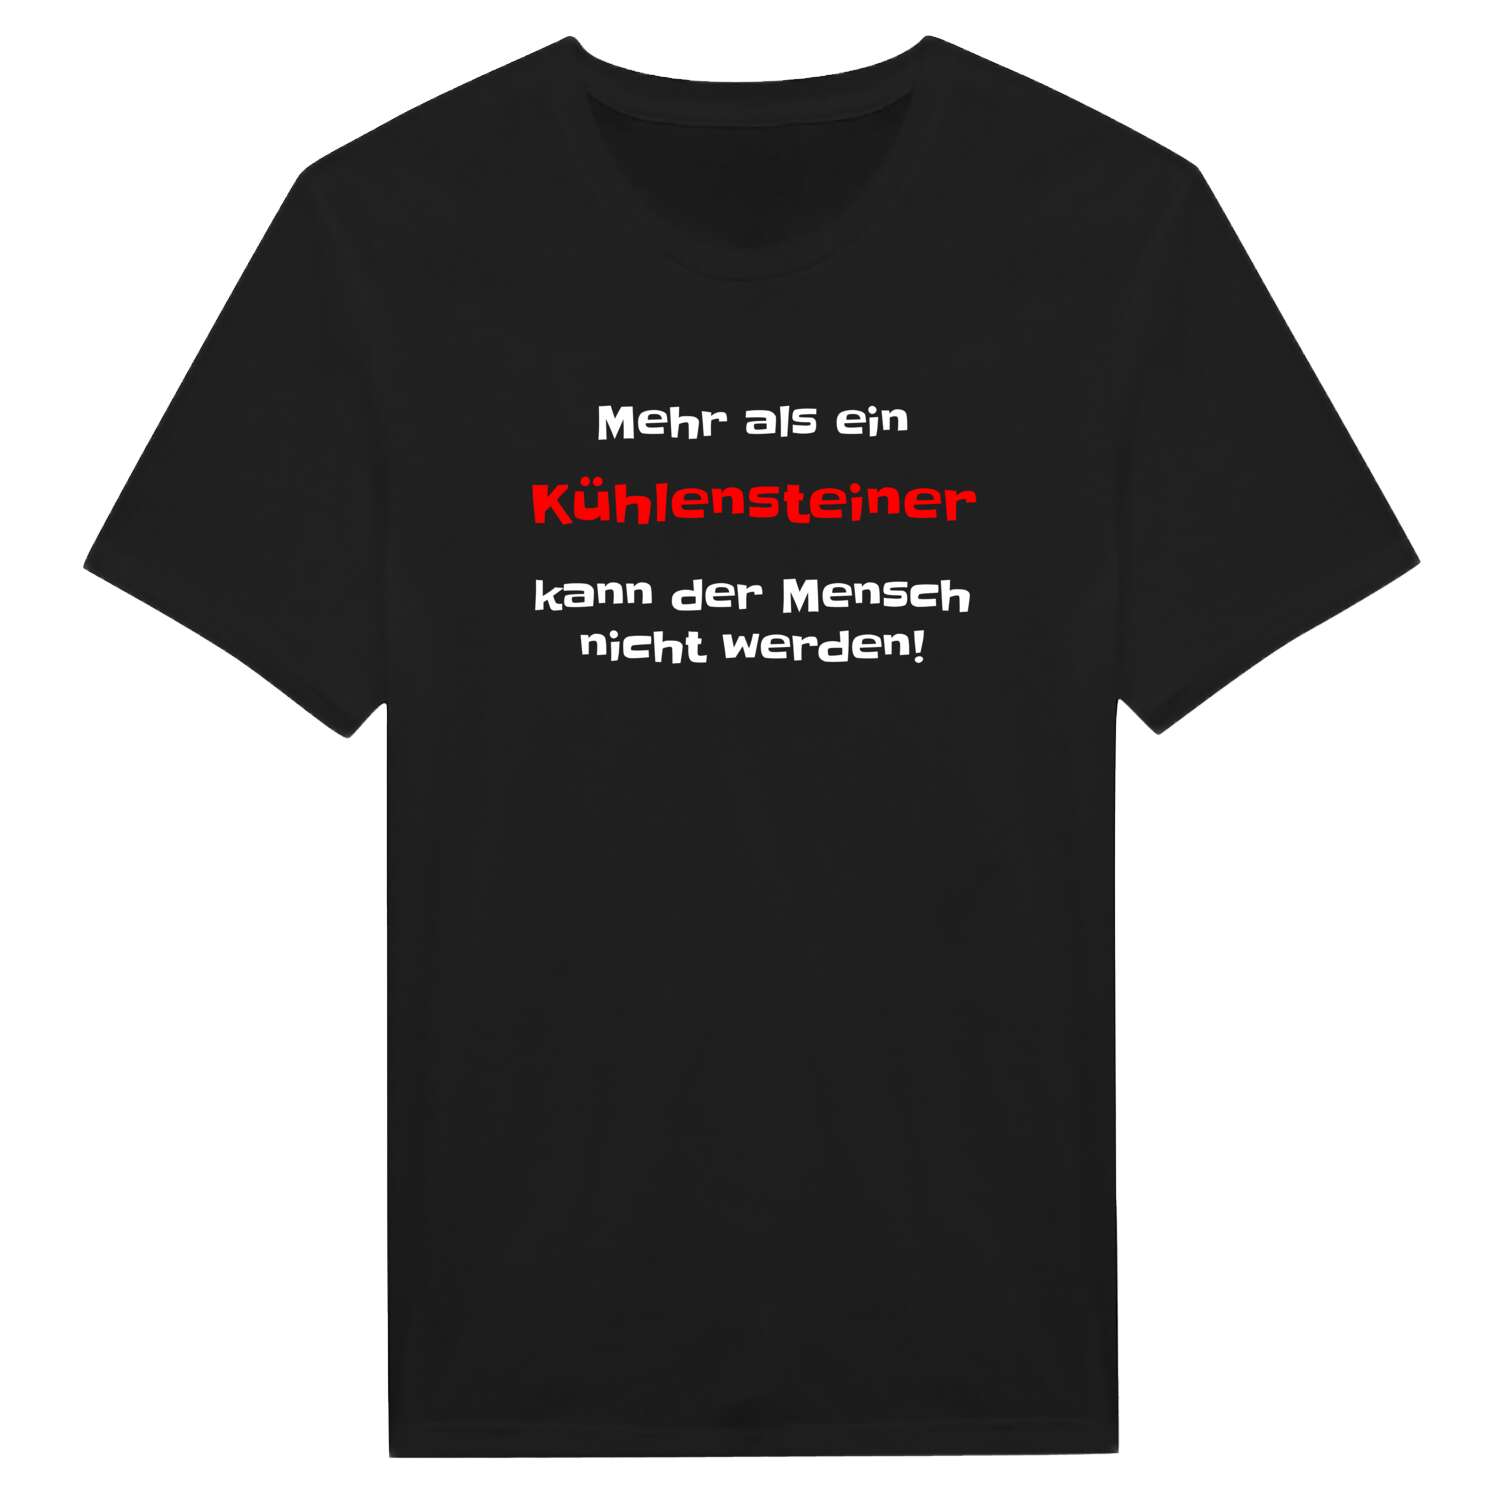 Kühlenstein T-Shirt »Mehr als ein«